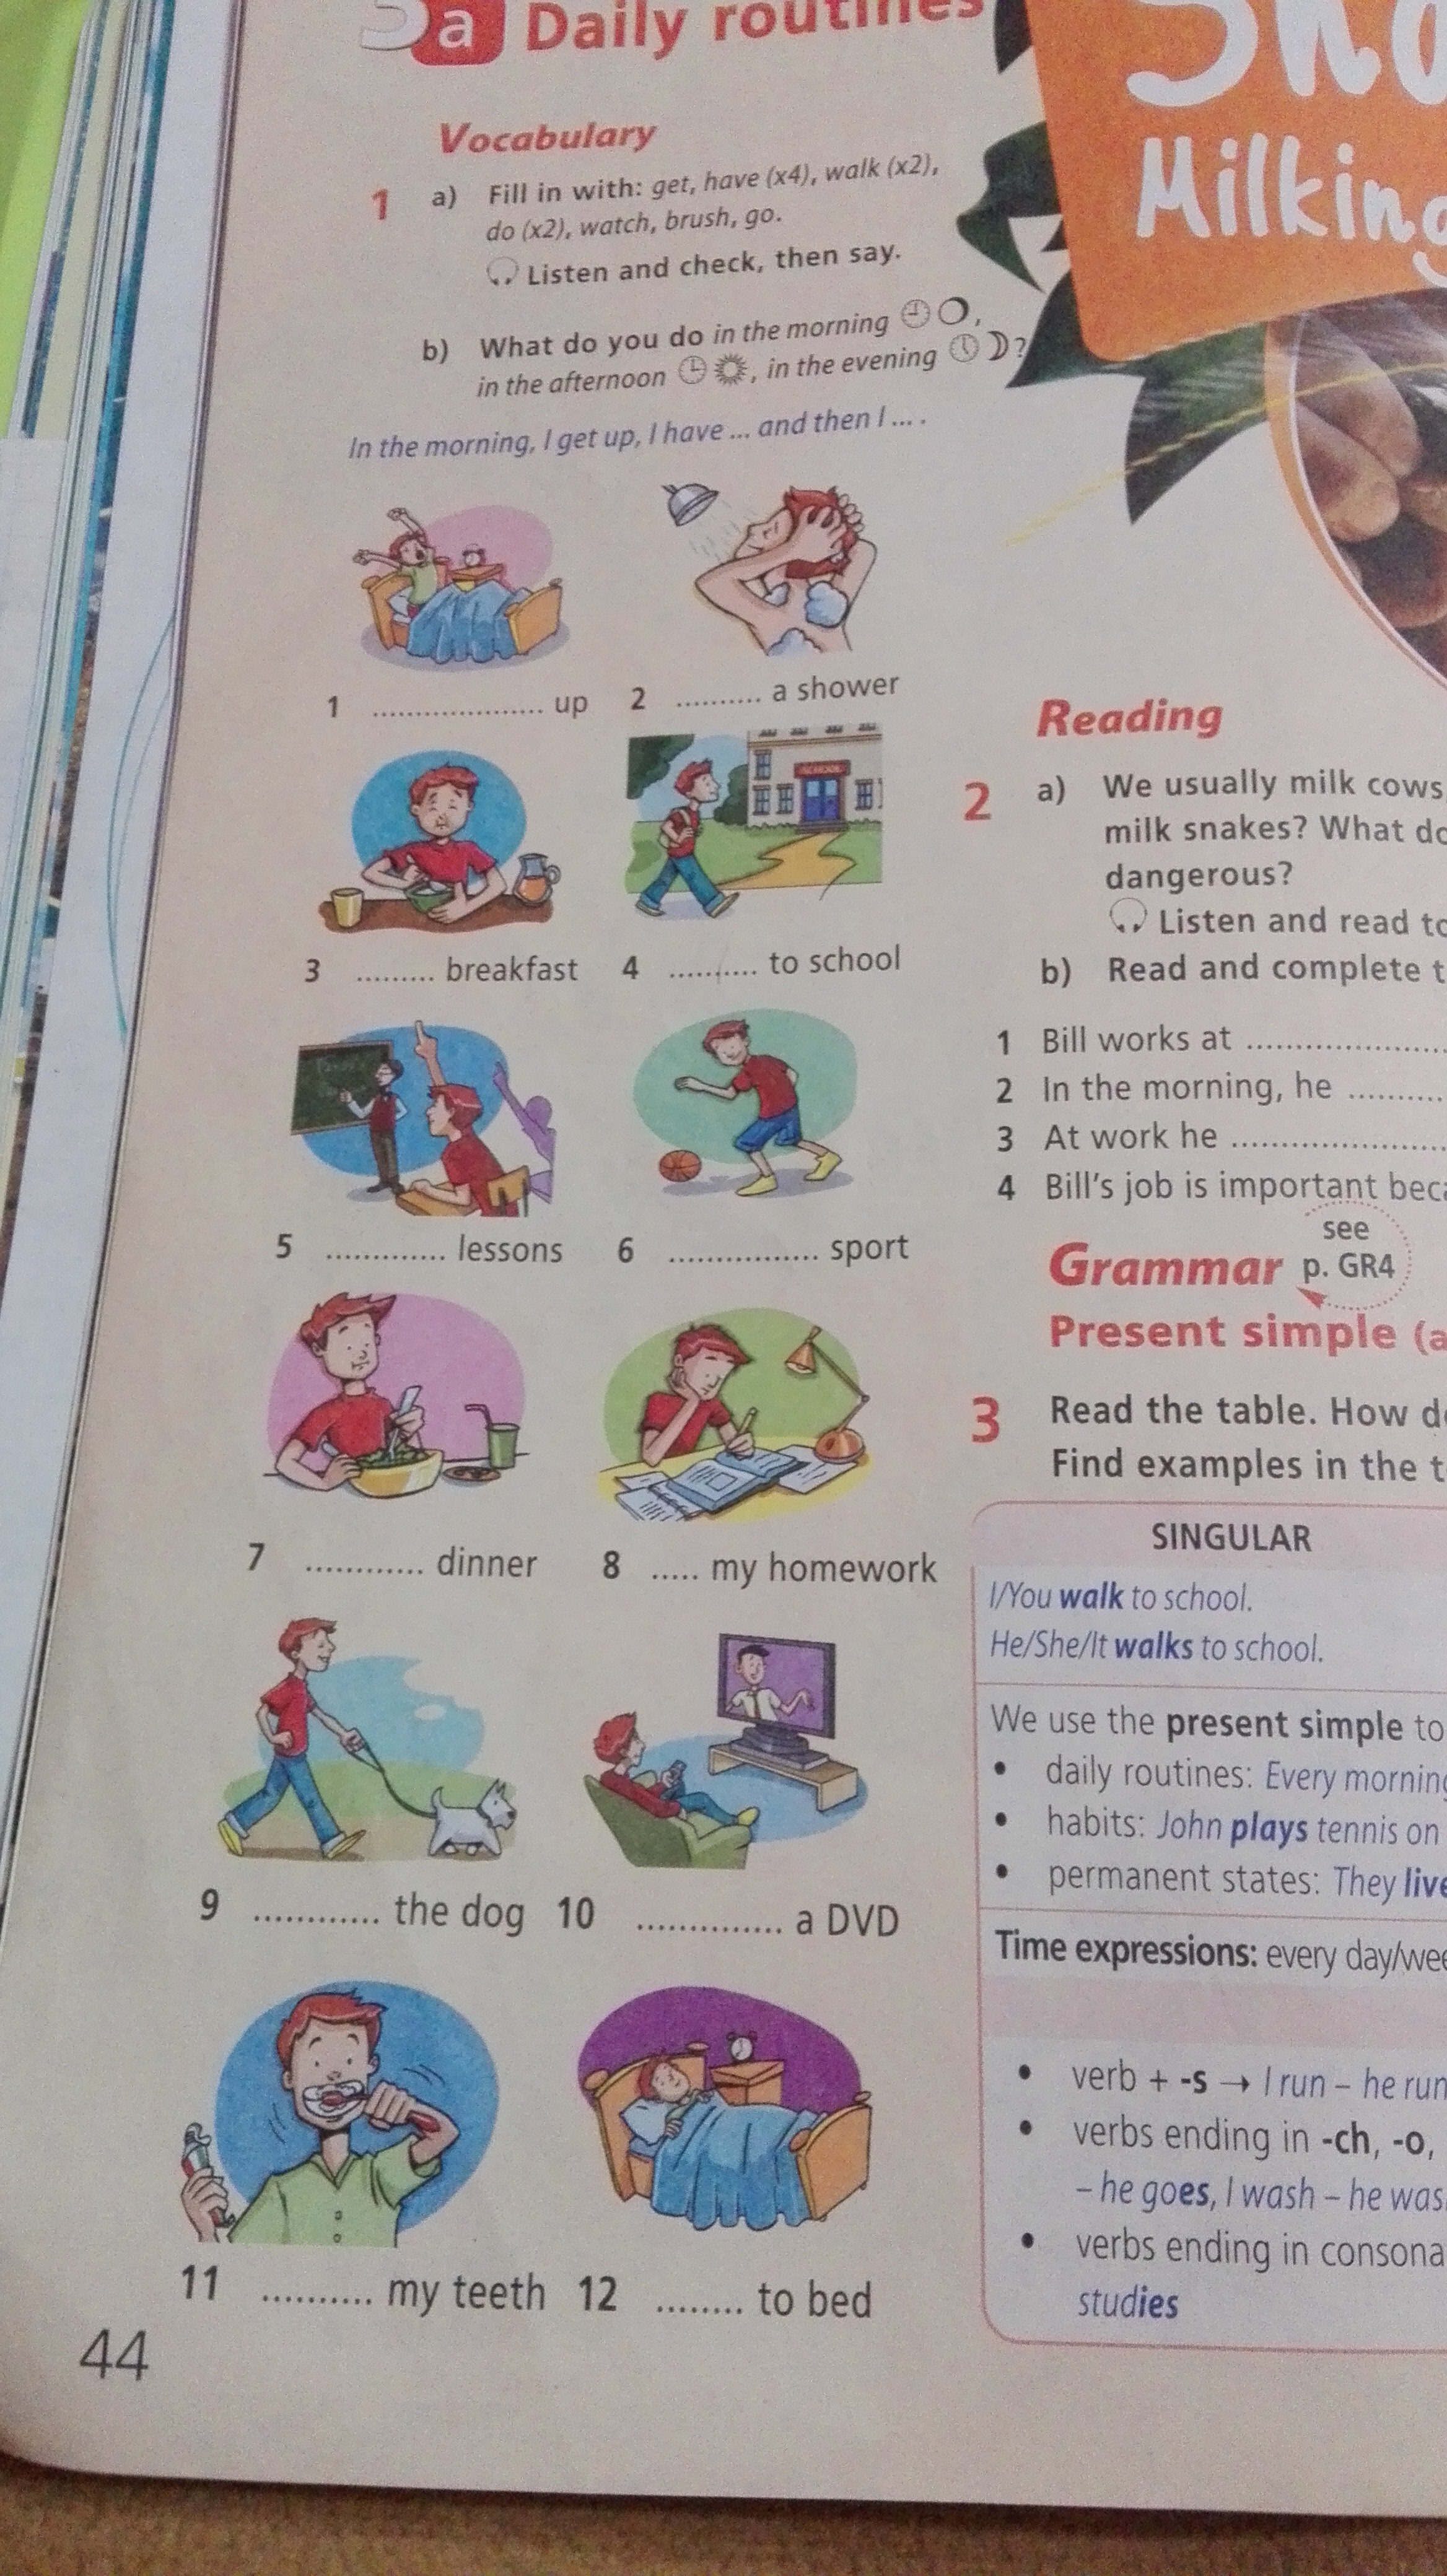 Английский 5 класс учебник страница 68